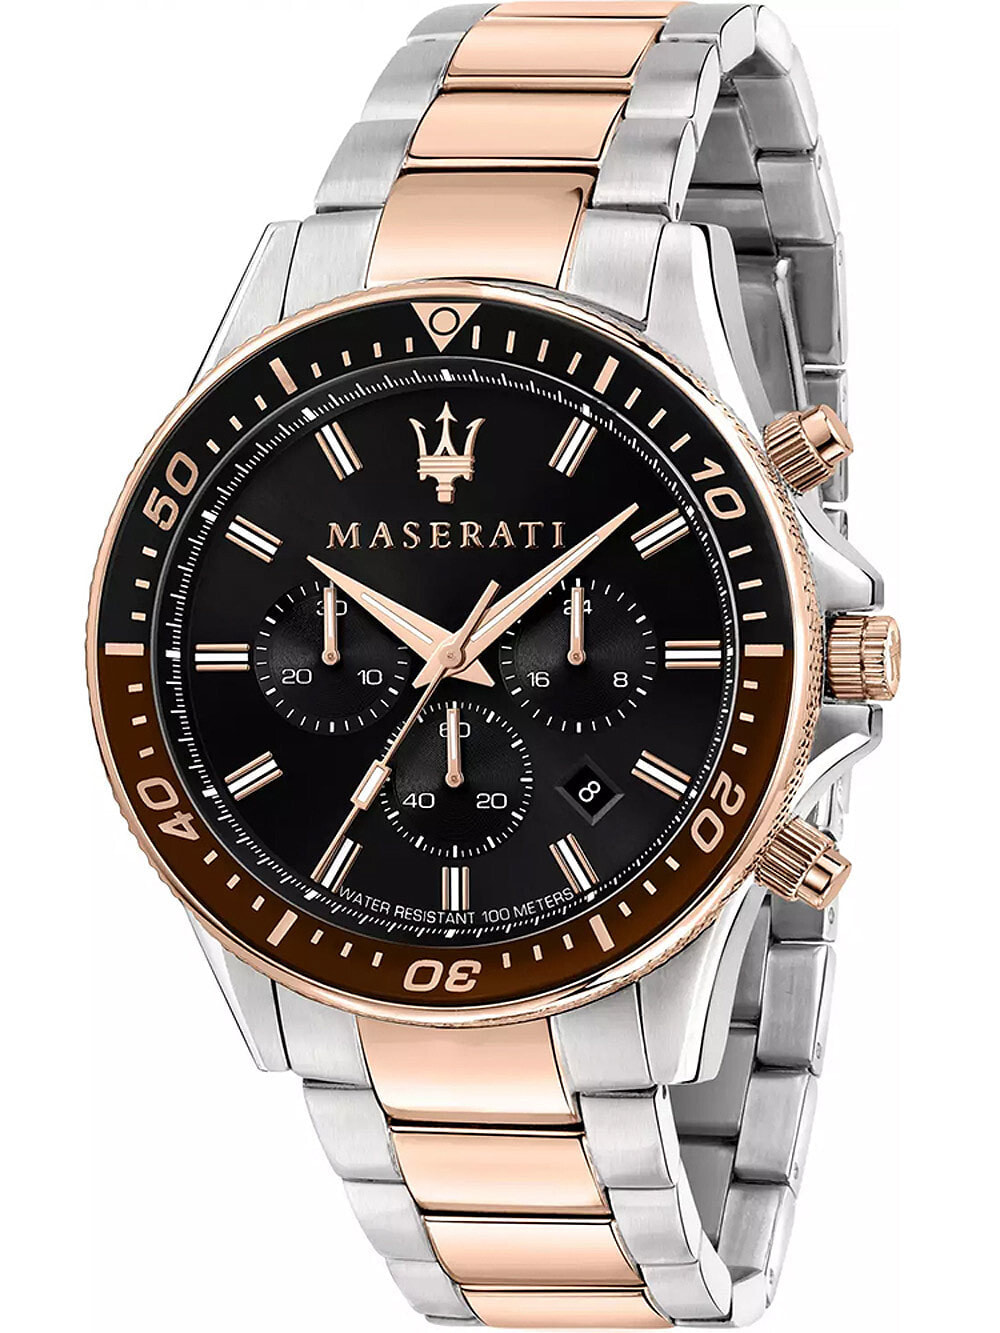 Мужские наручные часы с серебряным золотым браслетом Maserati R8873640009 Sfida chrono 44mm 10ATM